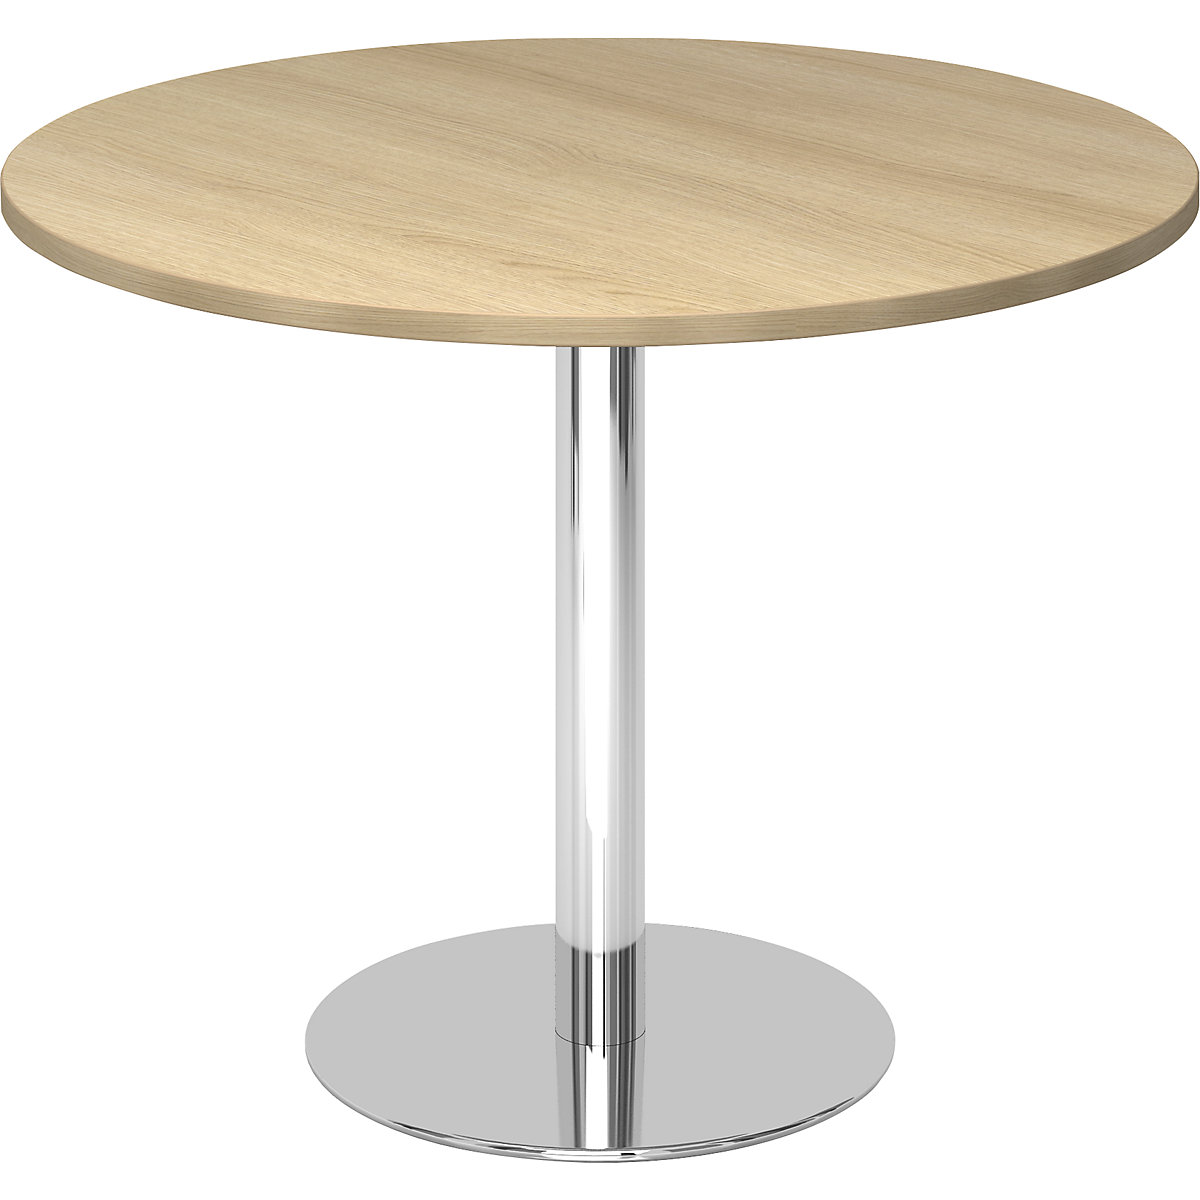 Jednací stůl, Ø 1000 mm, výška 755 mm, pochromovaný podstavec, deska dubový dekor